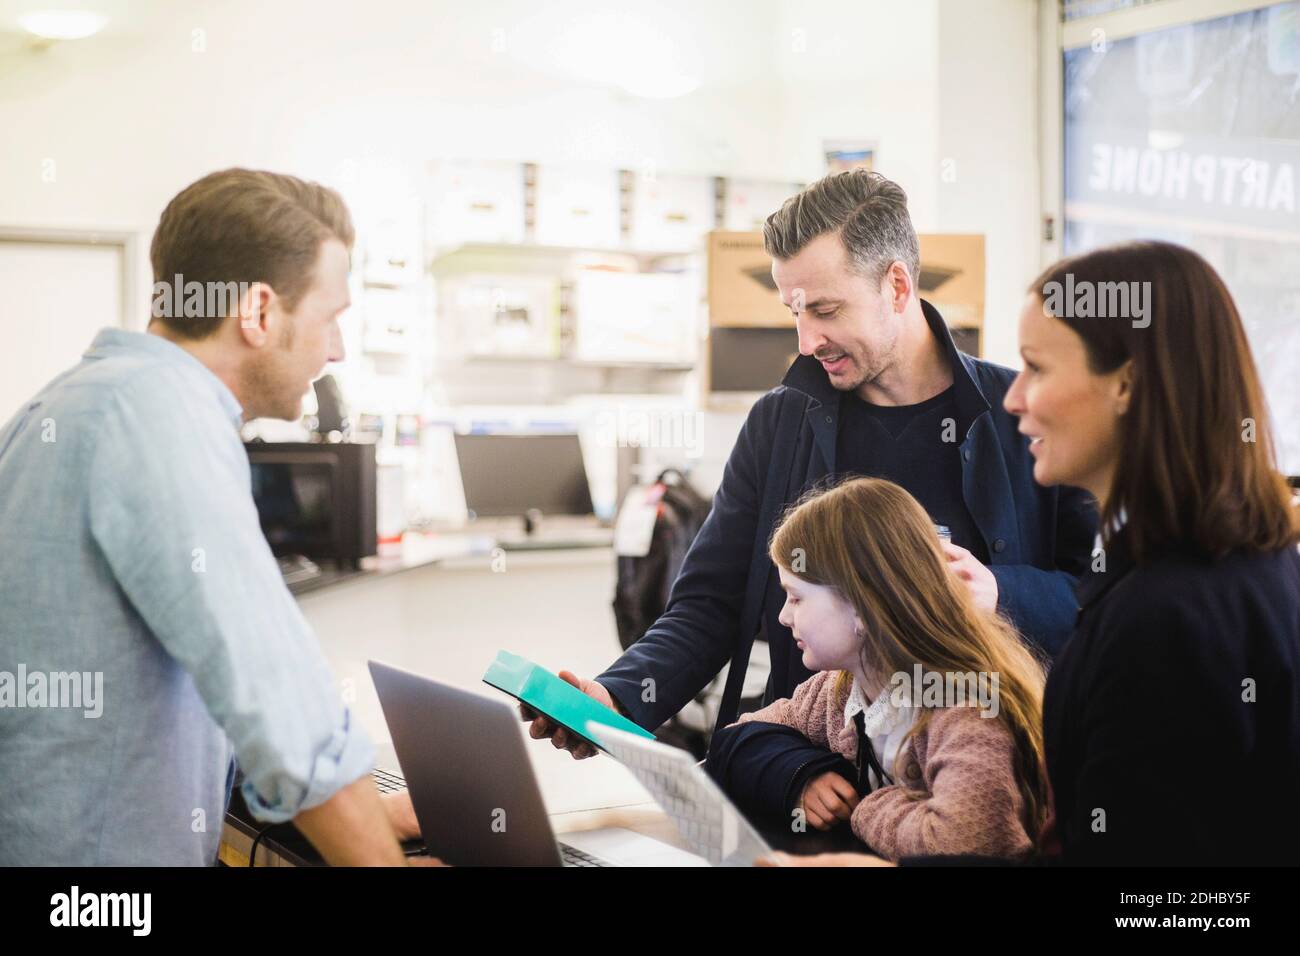 Reifer Mann, der Paket anschaut, während er mit Familie im Stehen ist Elektronikgeschäft Stockfoto